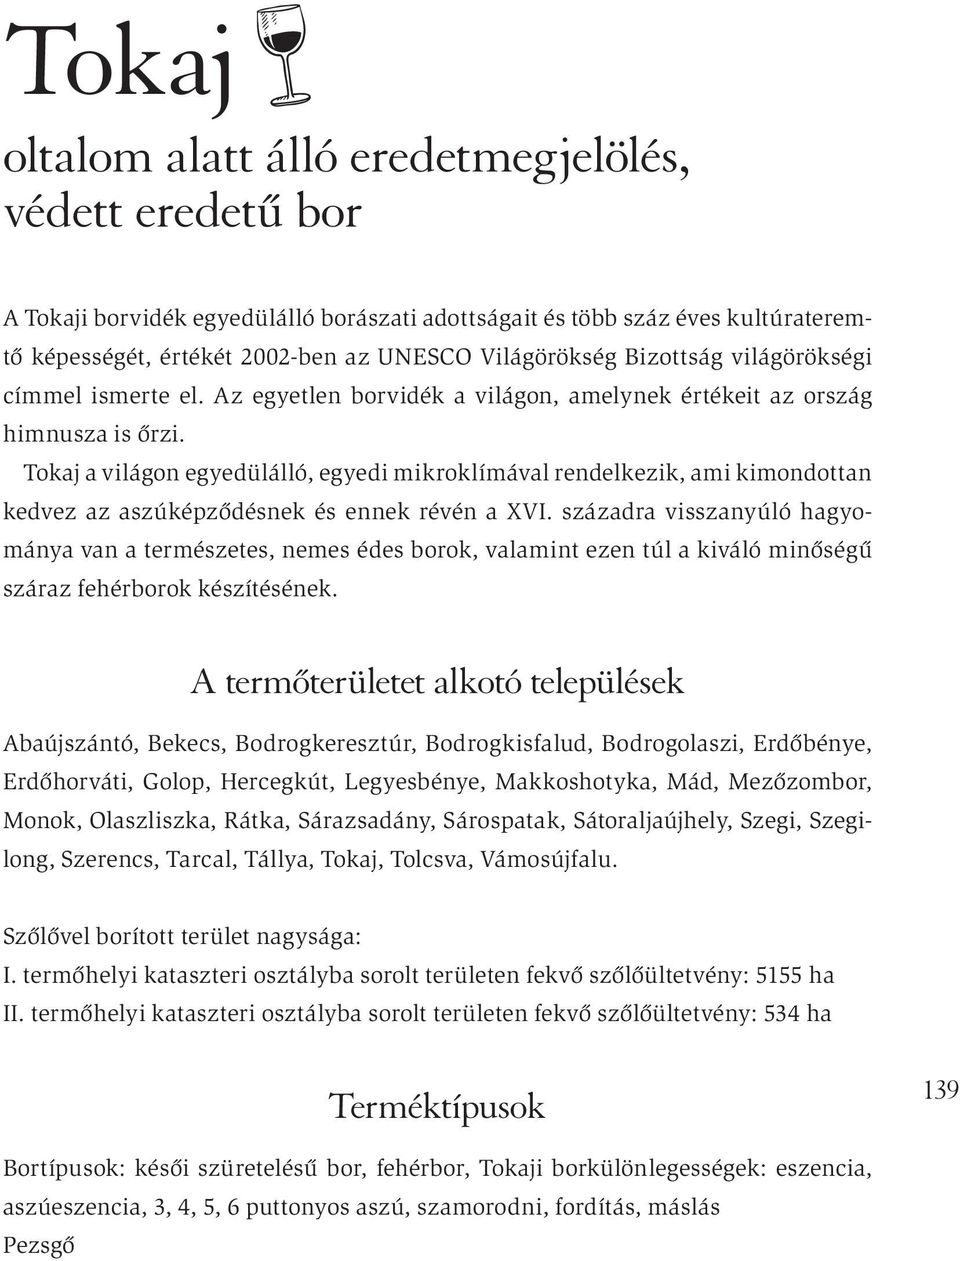 Tokaj a világon egyedülálló, egyedi mikroklímával rendelkezik, ami kimondottan kedvez az aszúképződésnek és ennek révén a XVI.